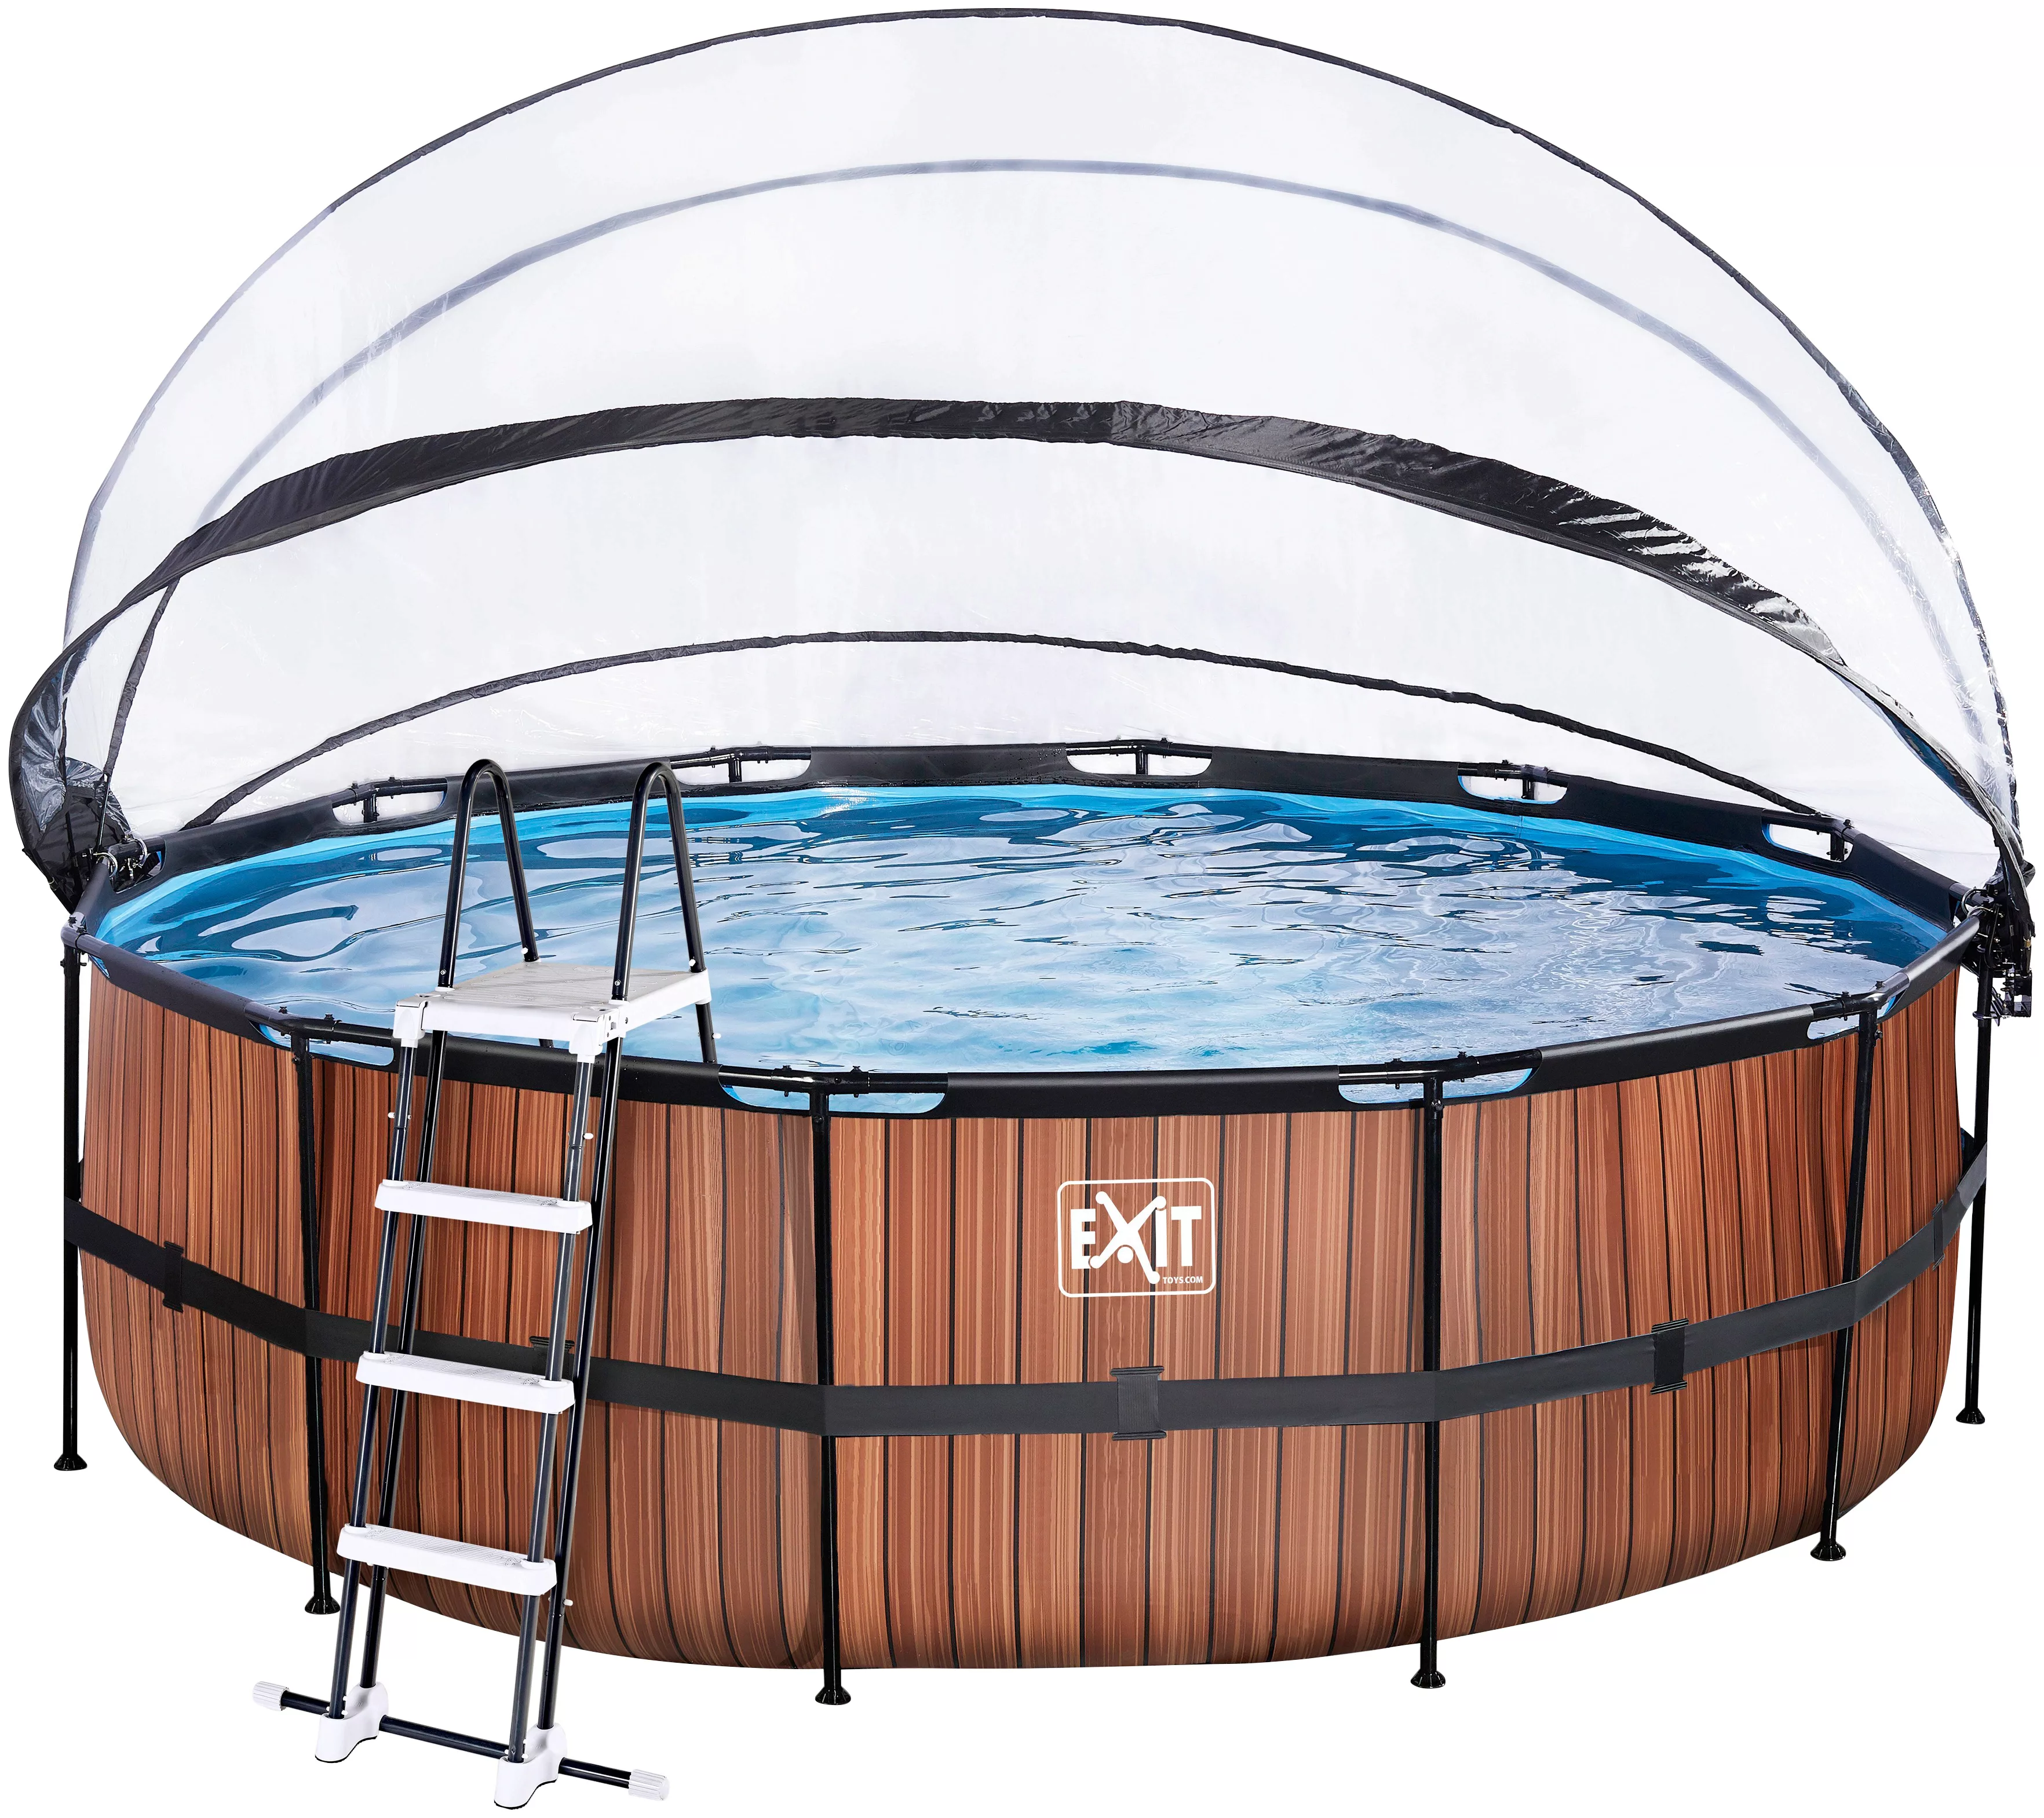 EXIT Wood Pool Braun Ø450x122cm m. Sandfilterpumpe u. Abdeckung günstig online kaufen